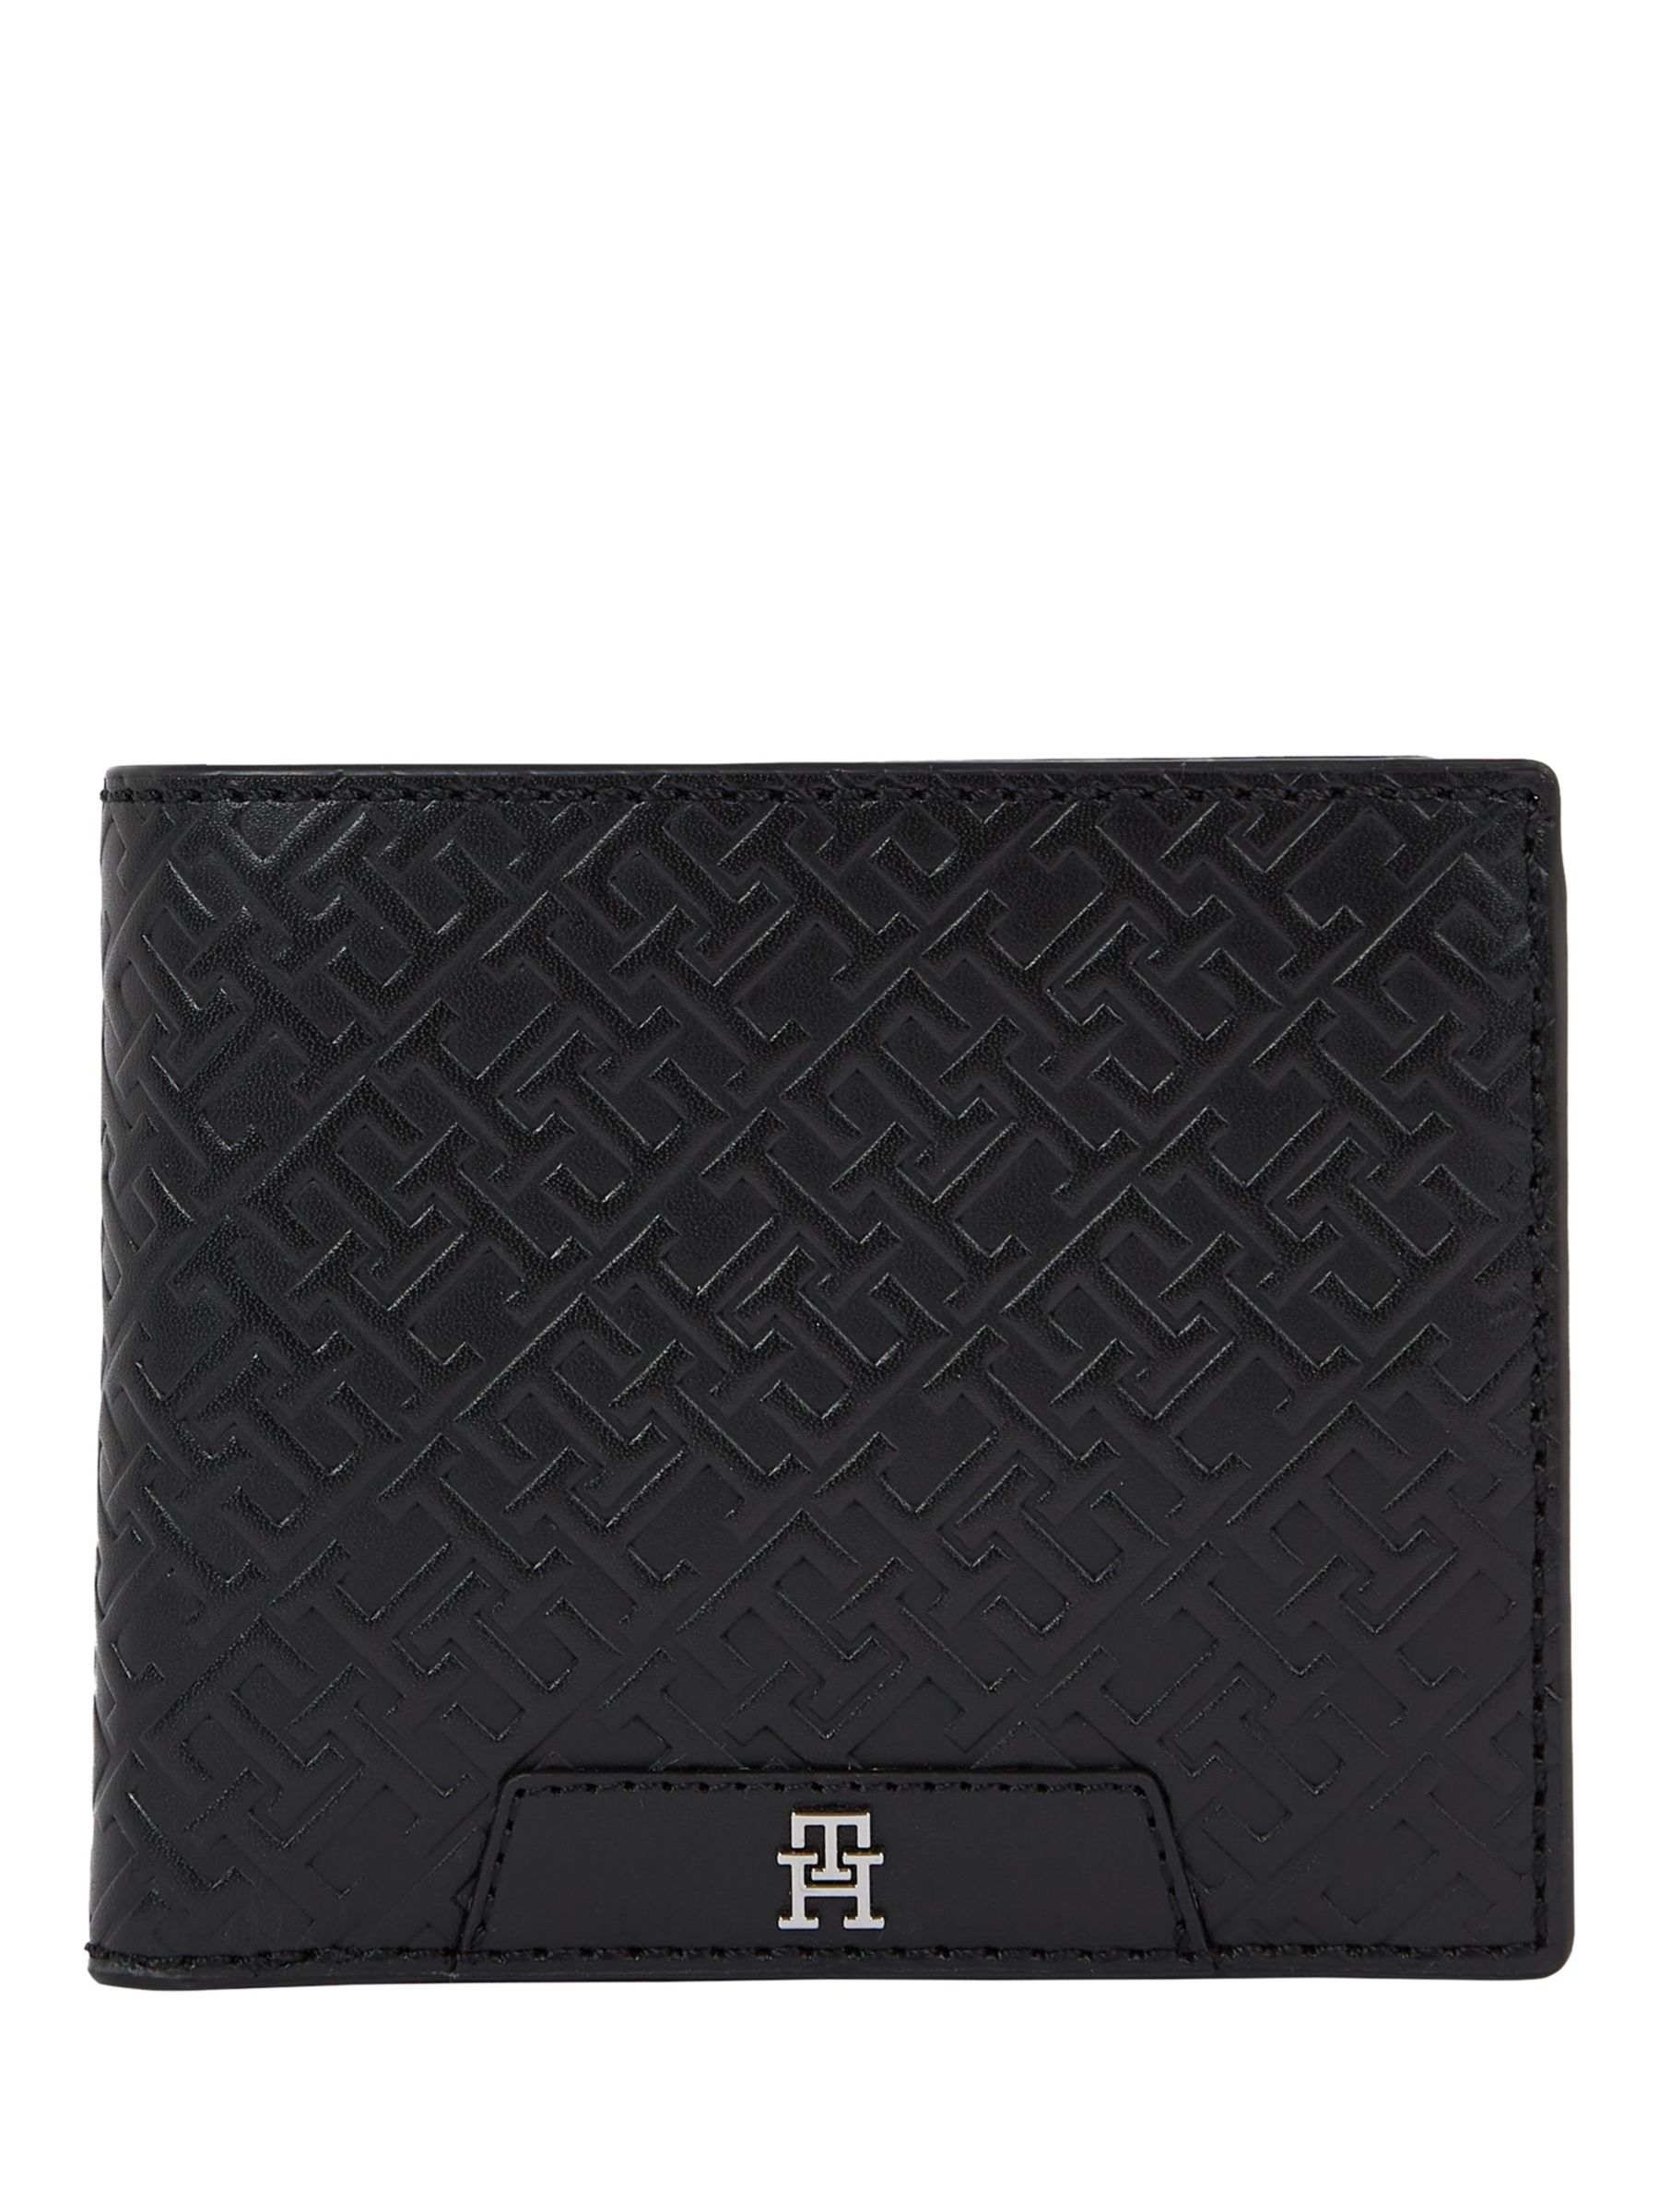 Tommy Hilfiger Monogram Leather Wallet, Black